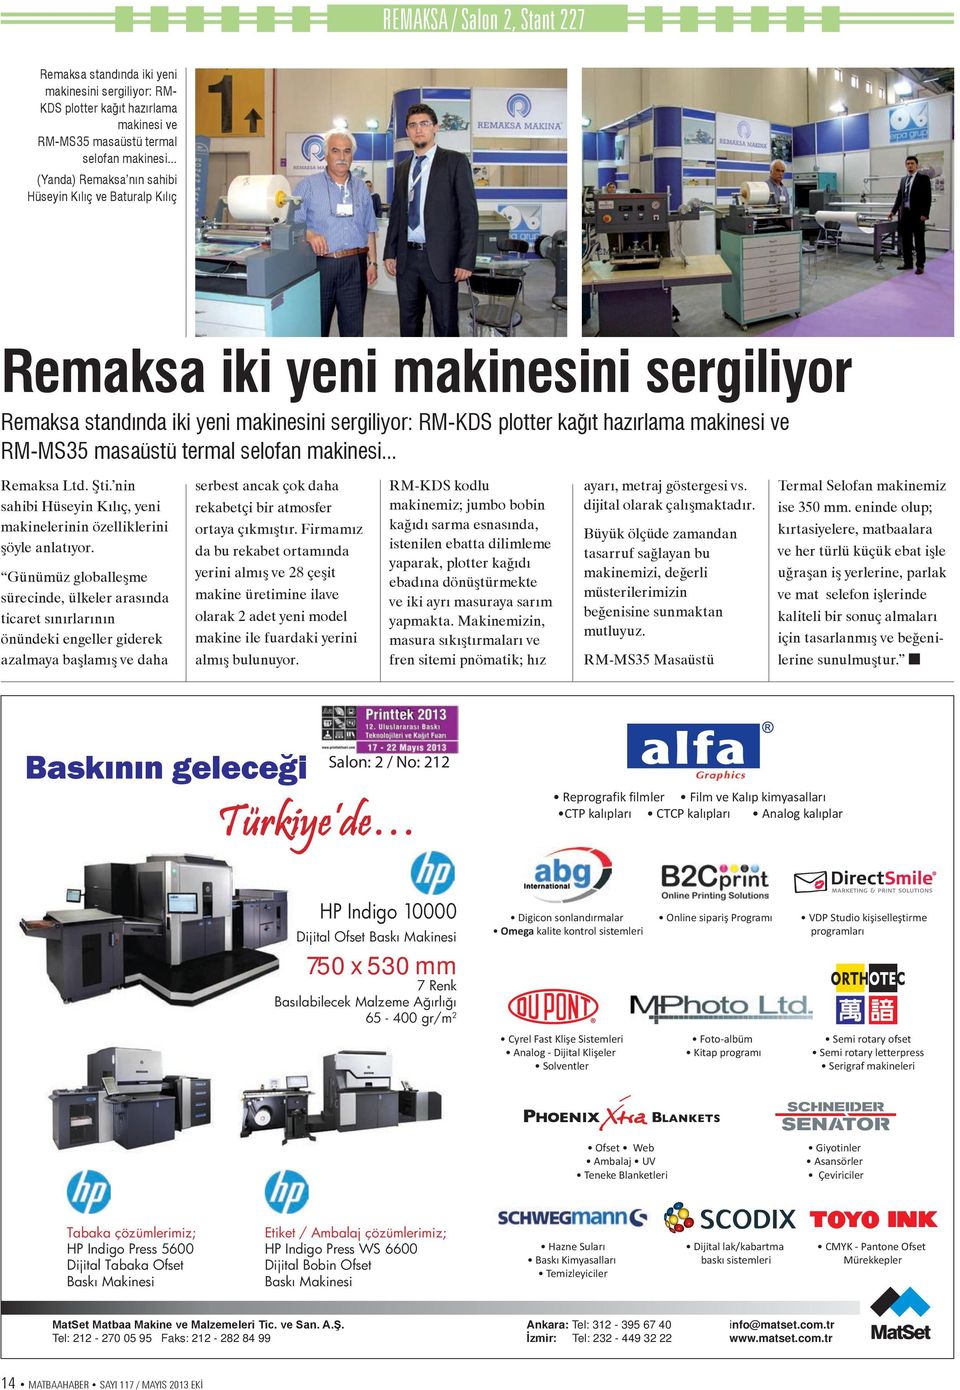 masaüstü termal selofan makinesi... Remaksa Ltd. Şti. nin sahibi Hüseyin Kılıç, yeni makinelerinin özelliklerini şöyle anlatıyor.